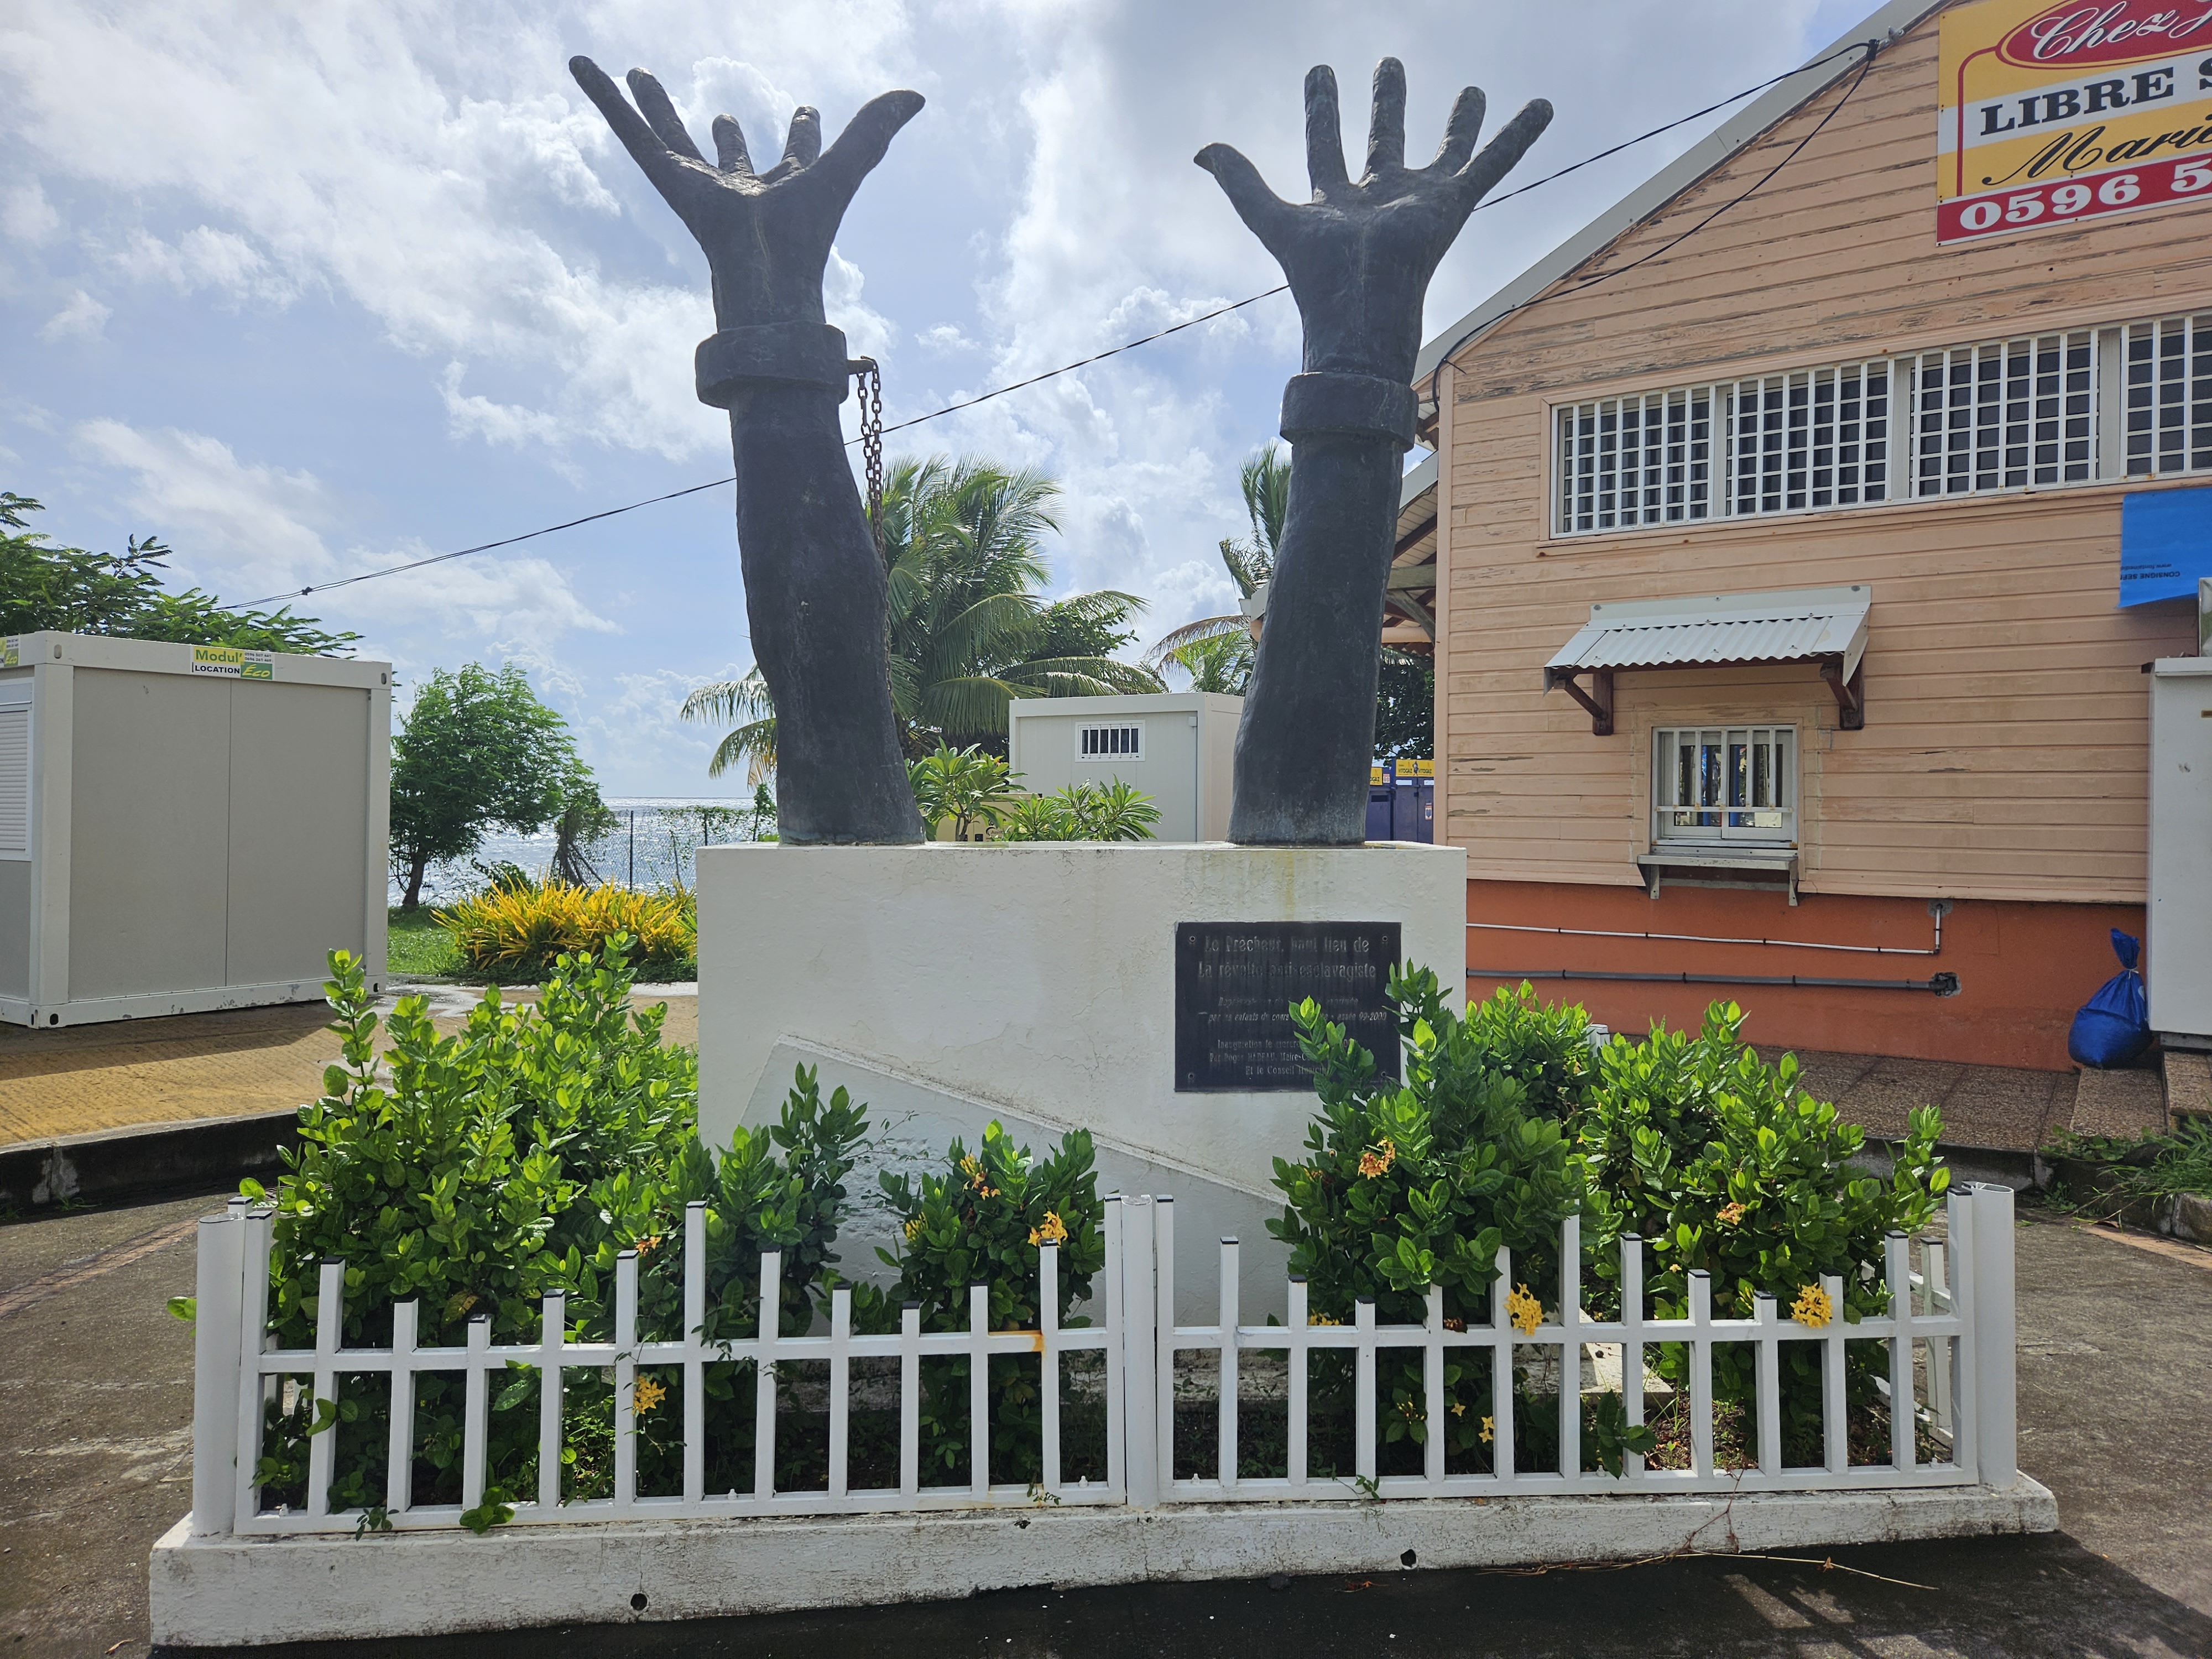     22 Mai en Martinique : les temps forts de la commémoration de l’abolition de l’esclavage

